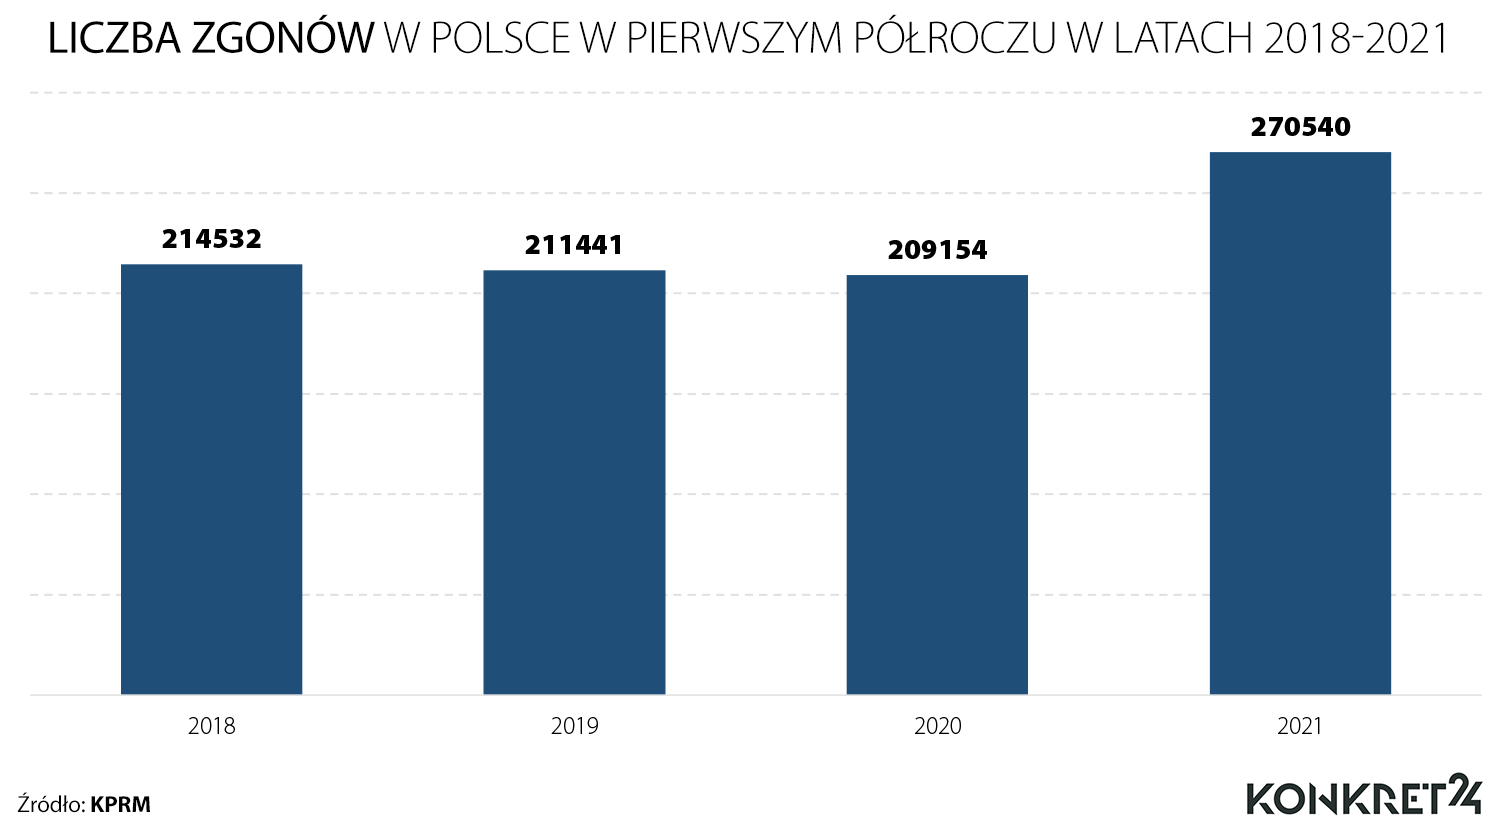 Liczba zgonów w Polsce w pierwszym półroczu w latach 2018-2021